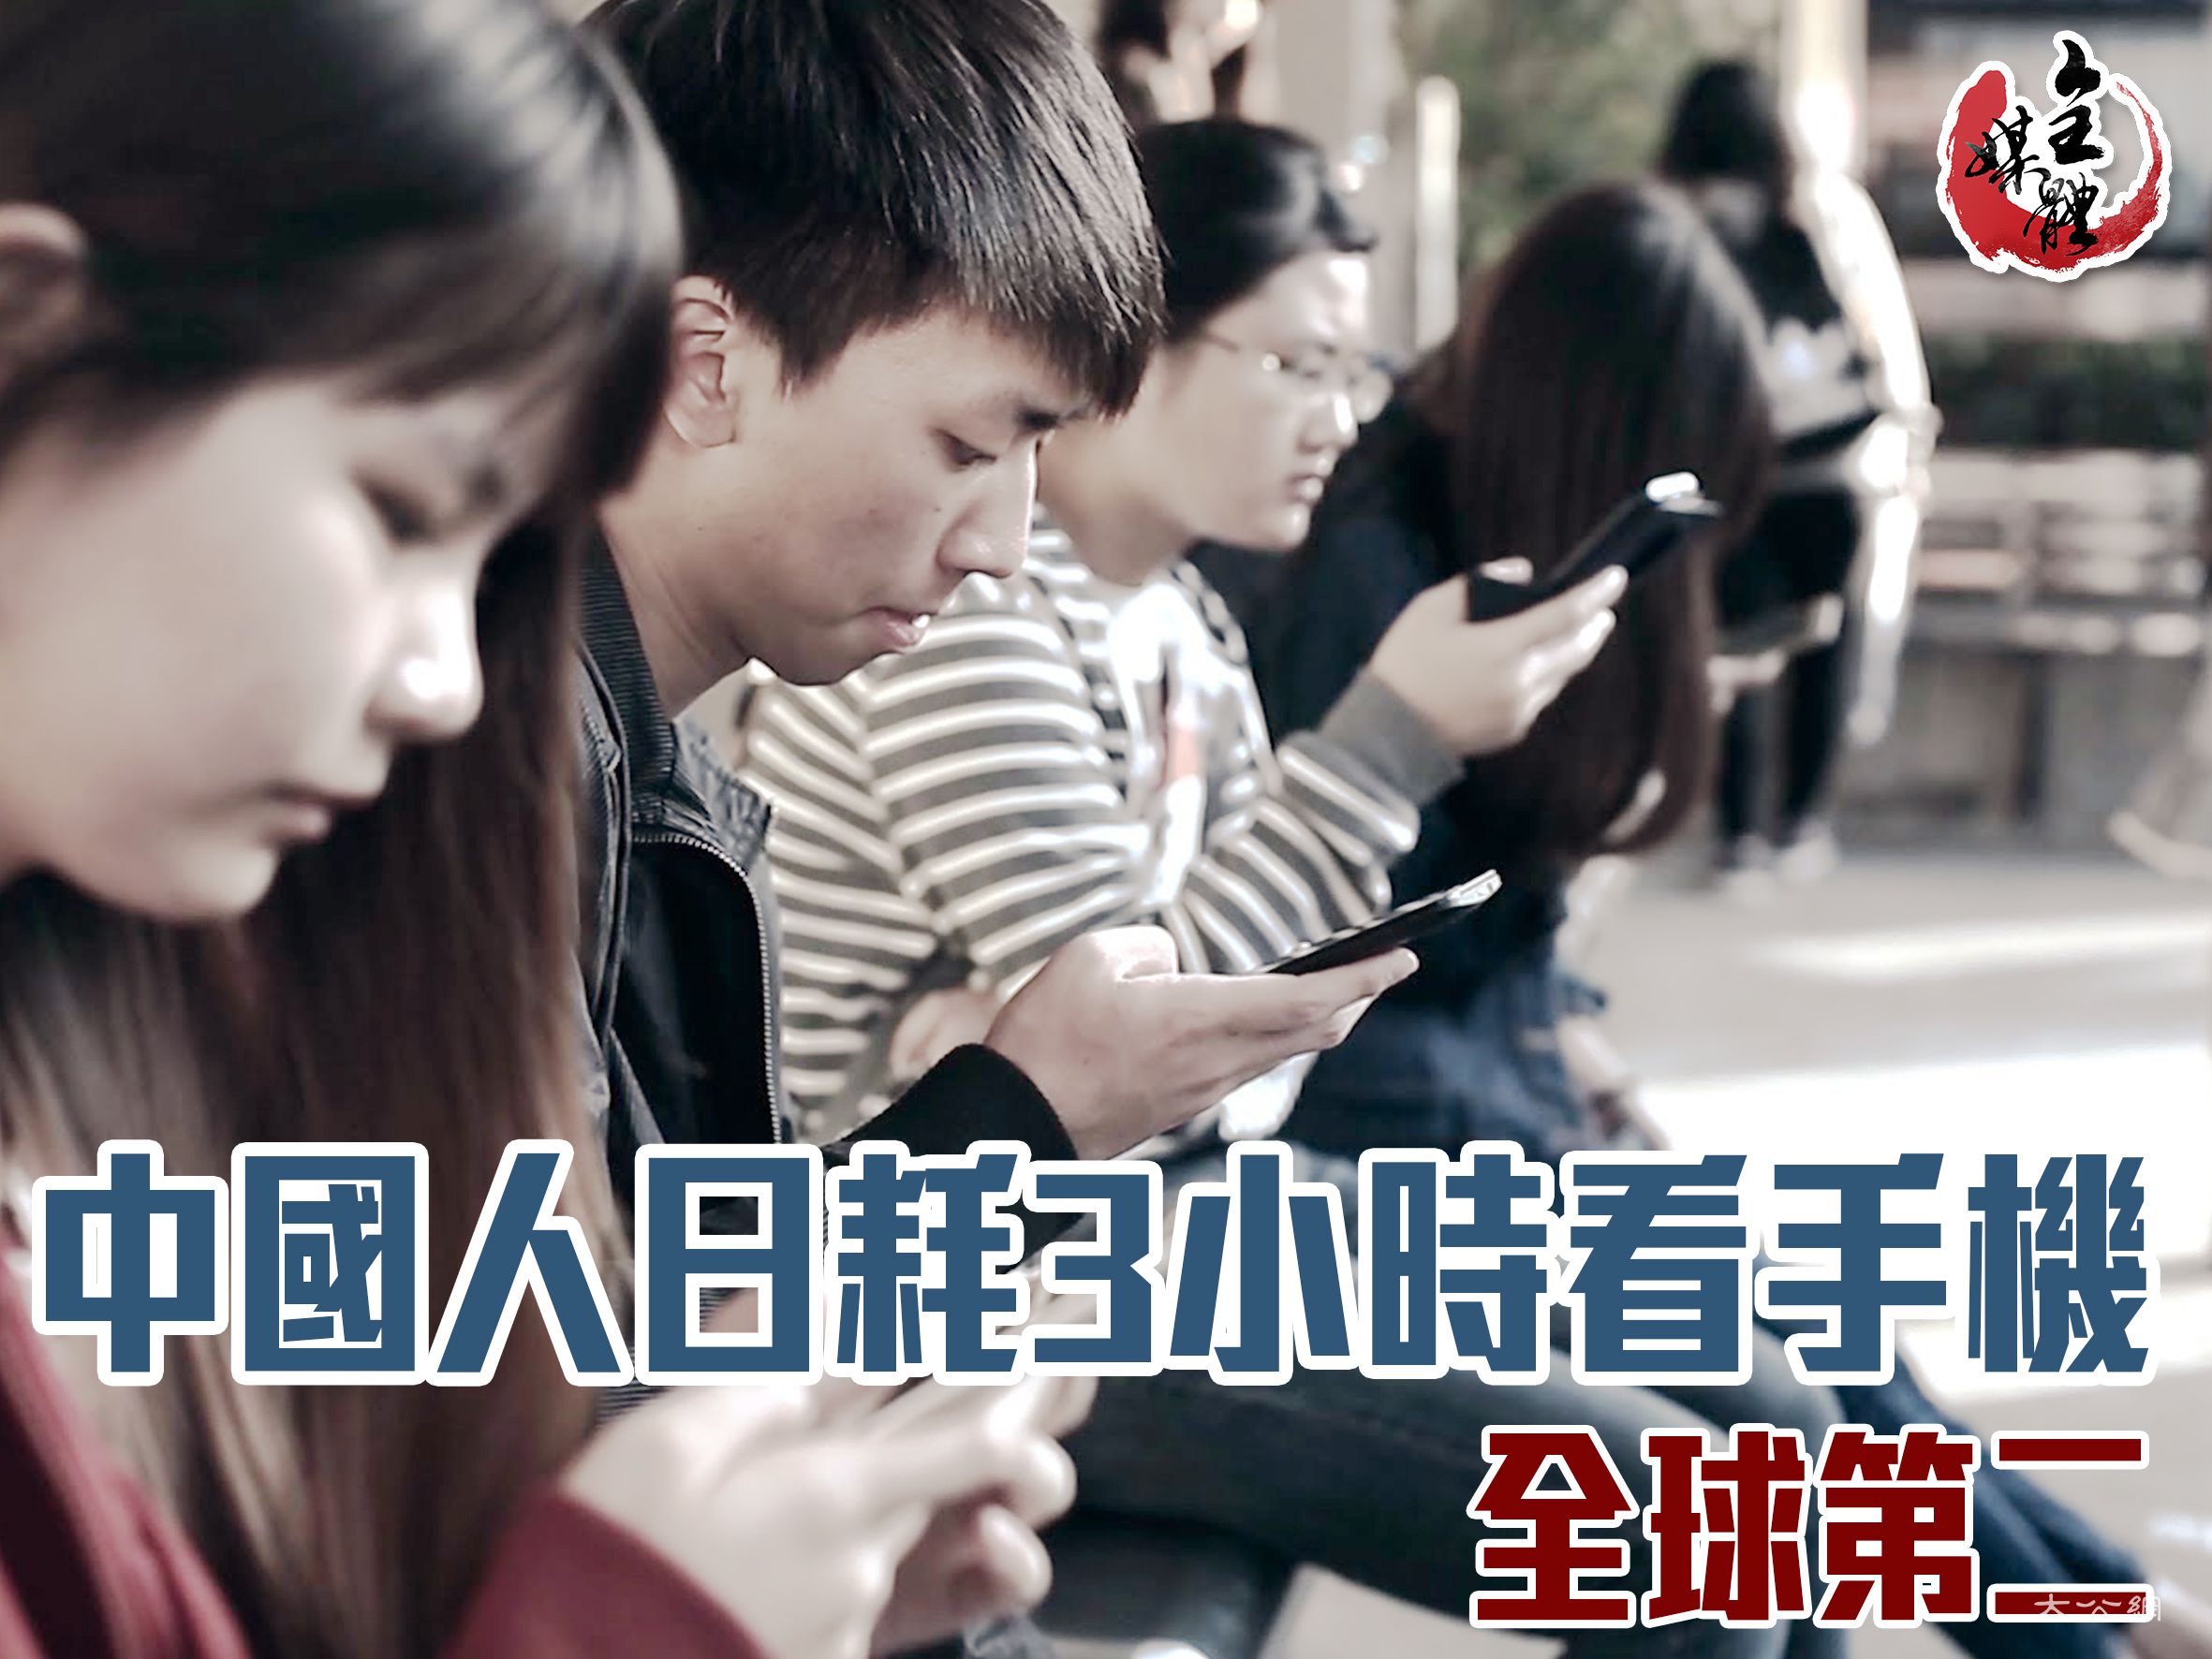 中國人日耗3小時看手機 全球第二